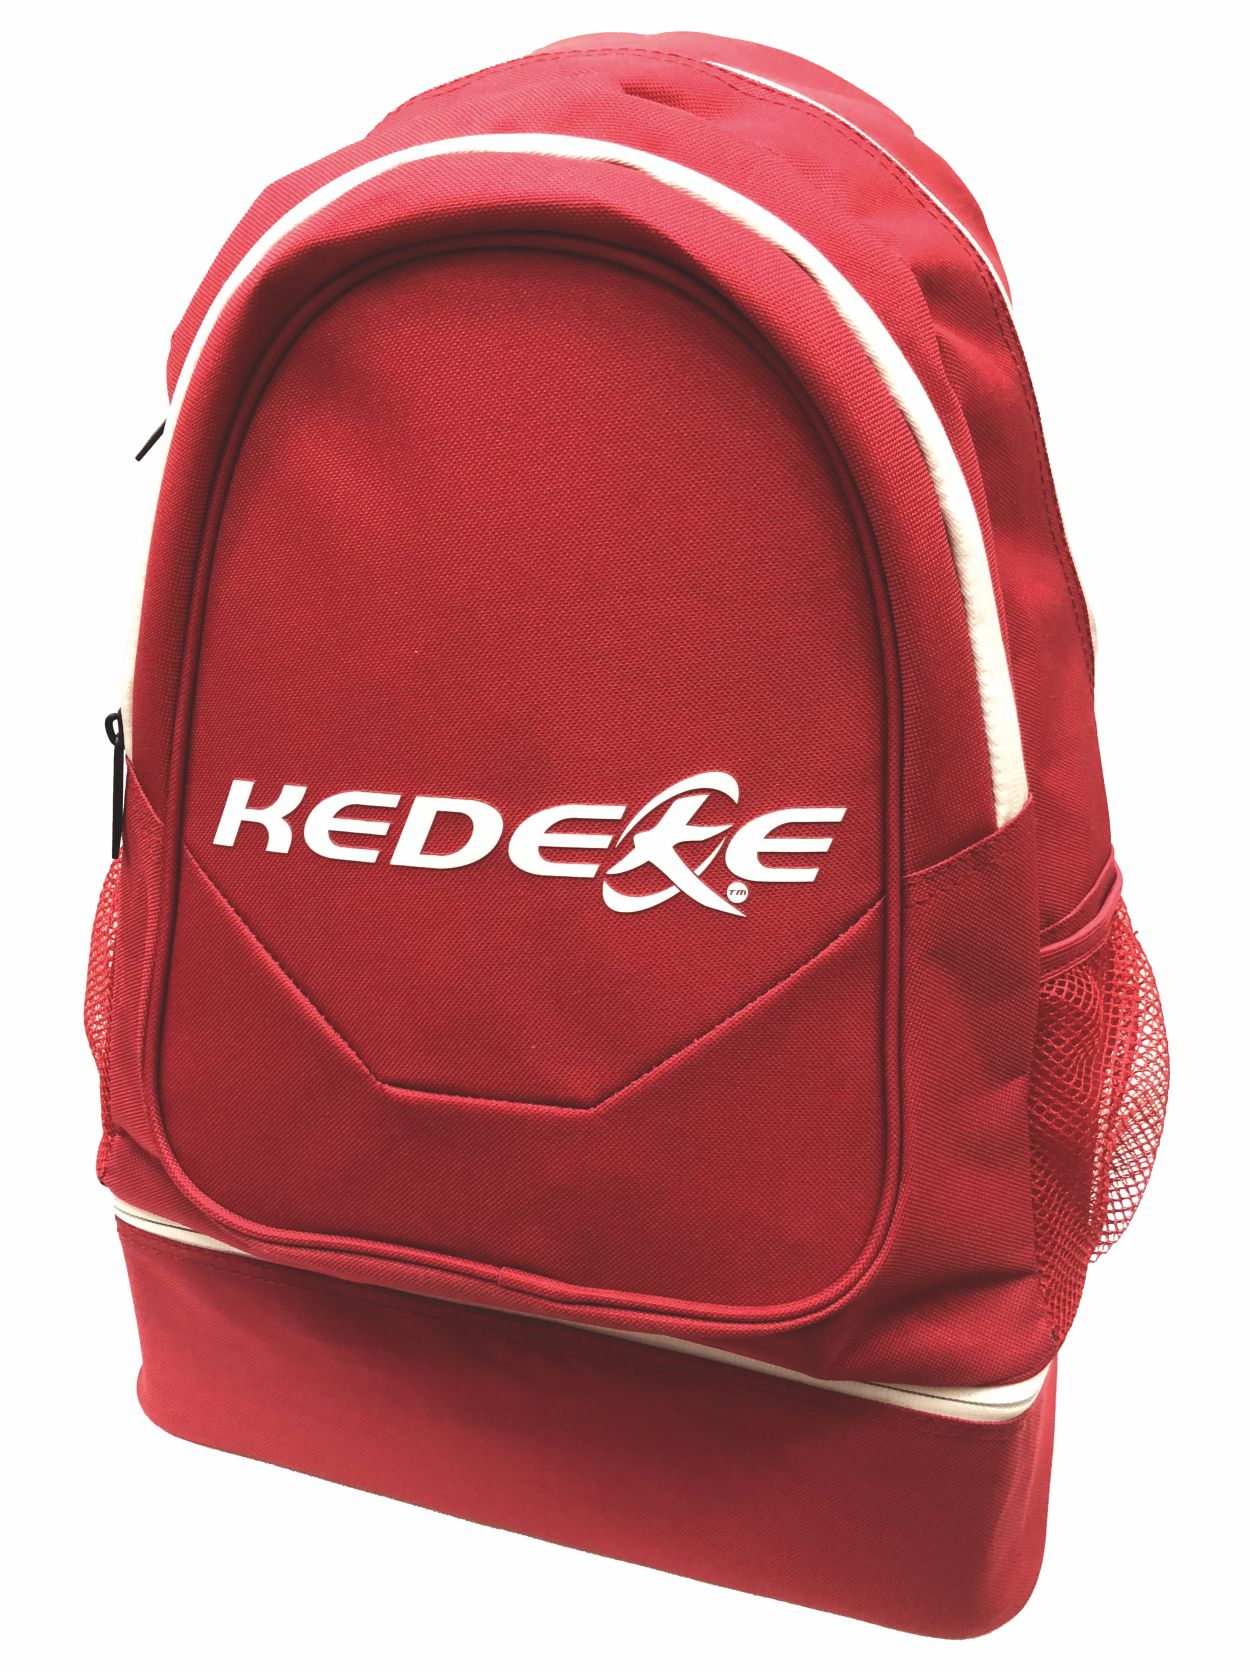 Fabricante y distribuidor de ropa deportiva - Kedeke Deporte